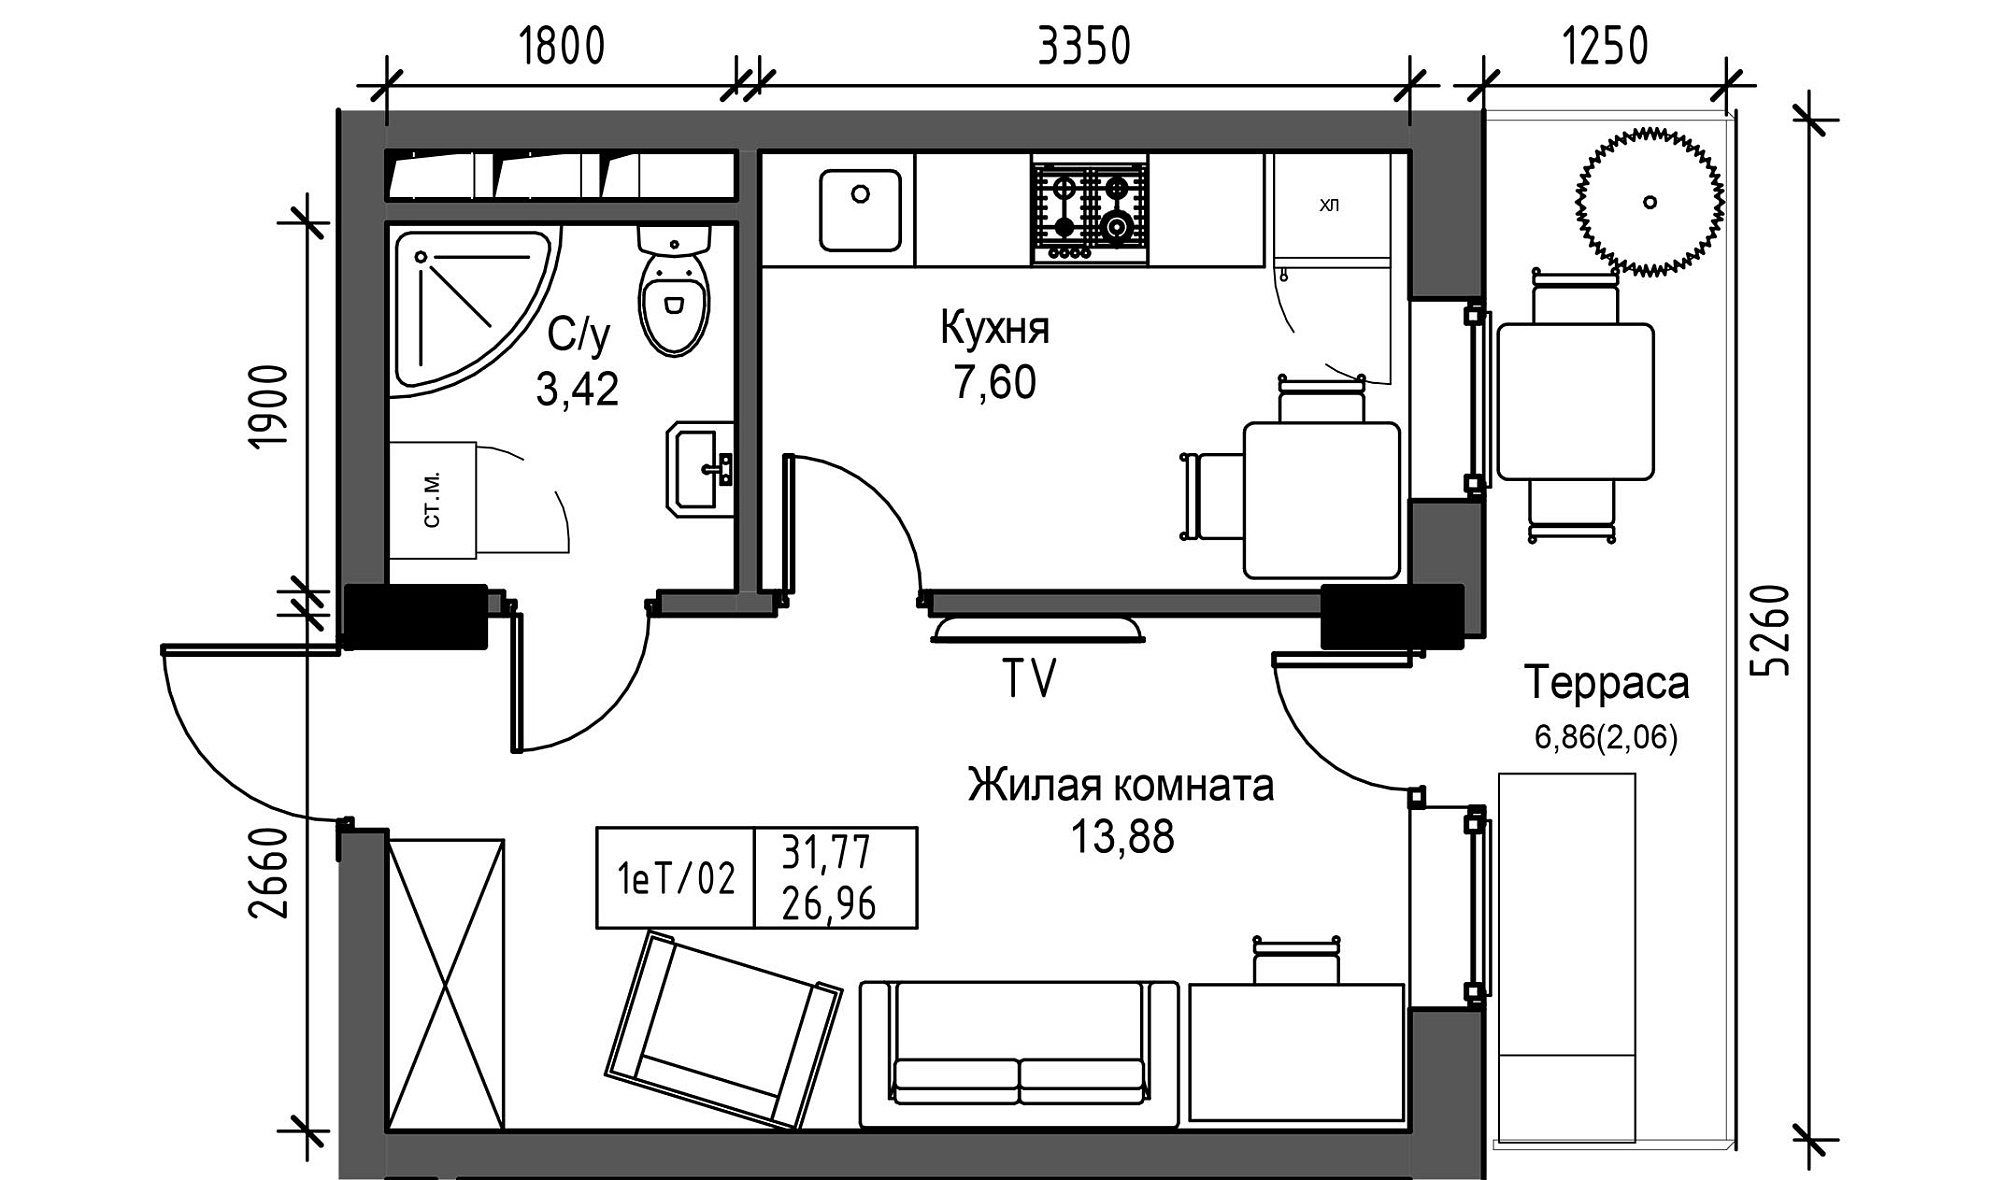 Планировка 1-к квартира площей 26.96м2, UM-003-05/0037.